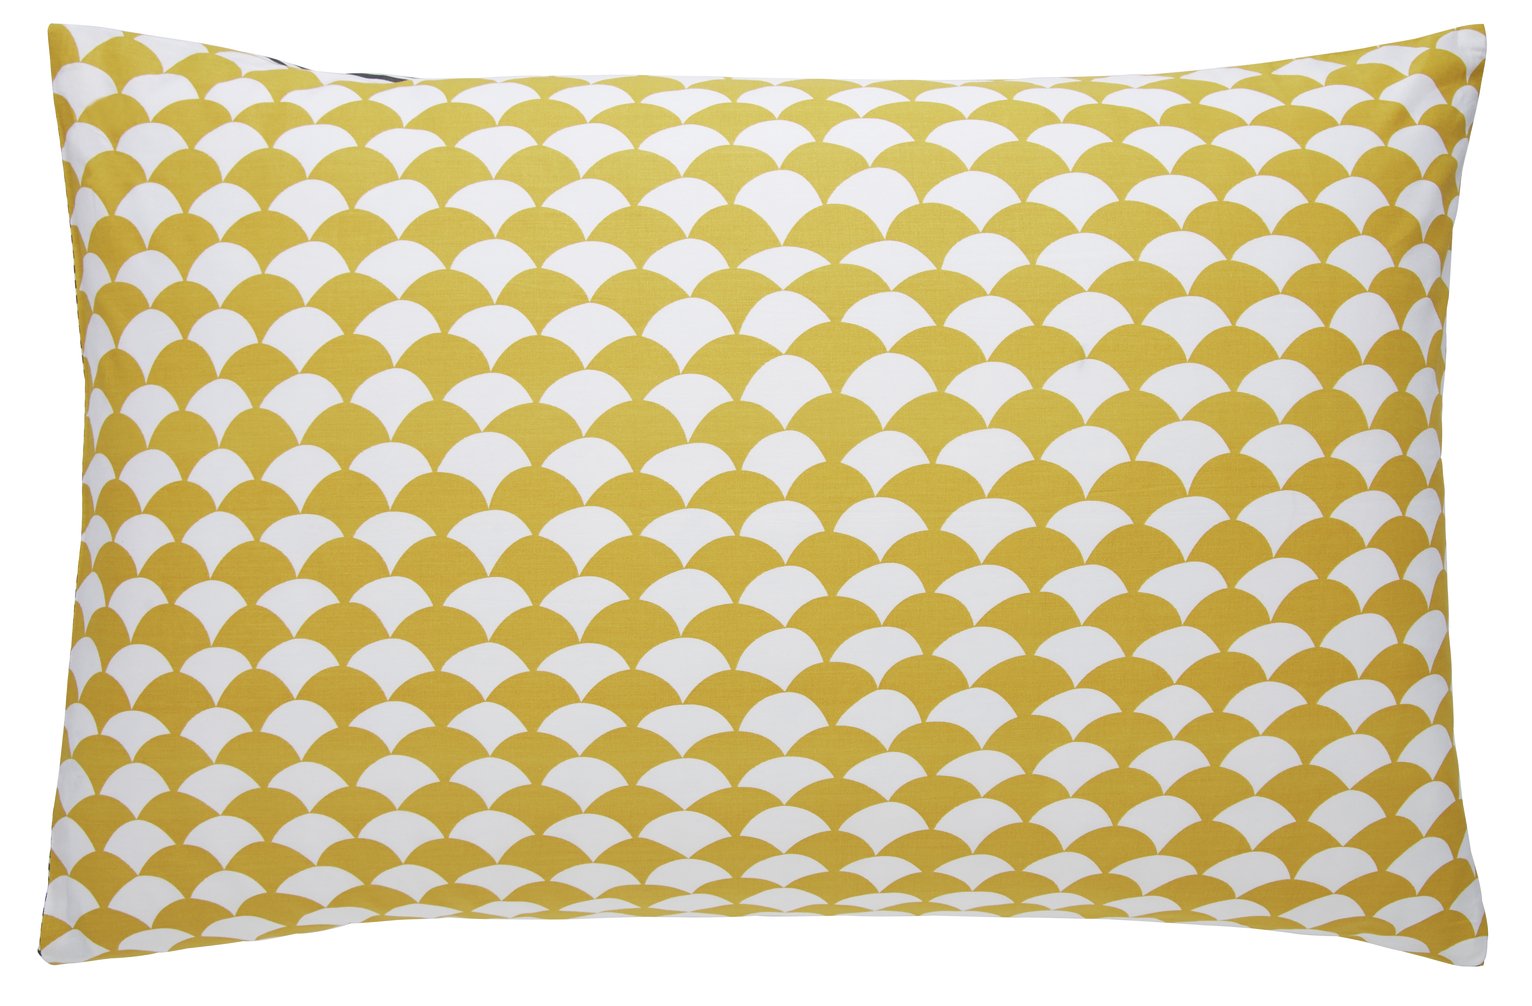 Habitat Scallop Cotton Standard Pillowcase Pair - Mustard